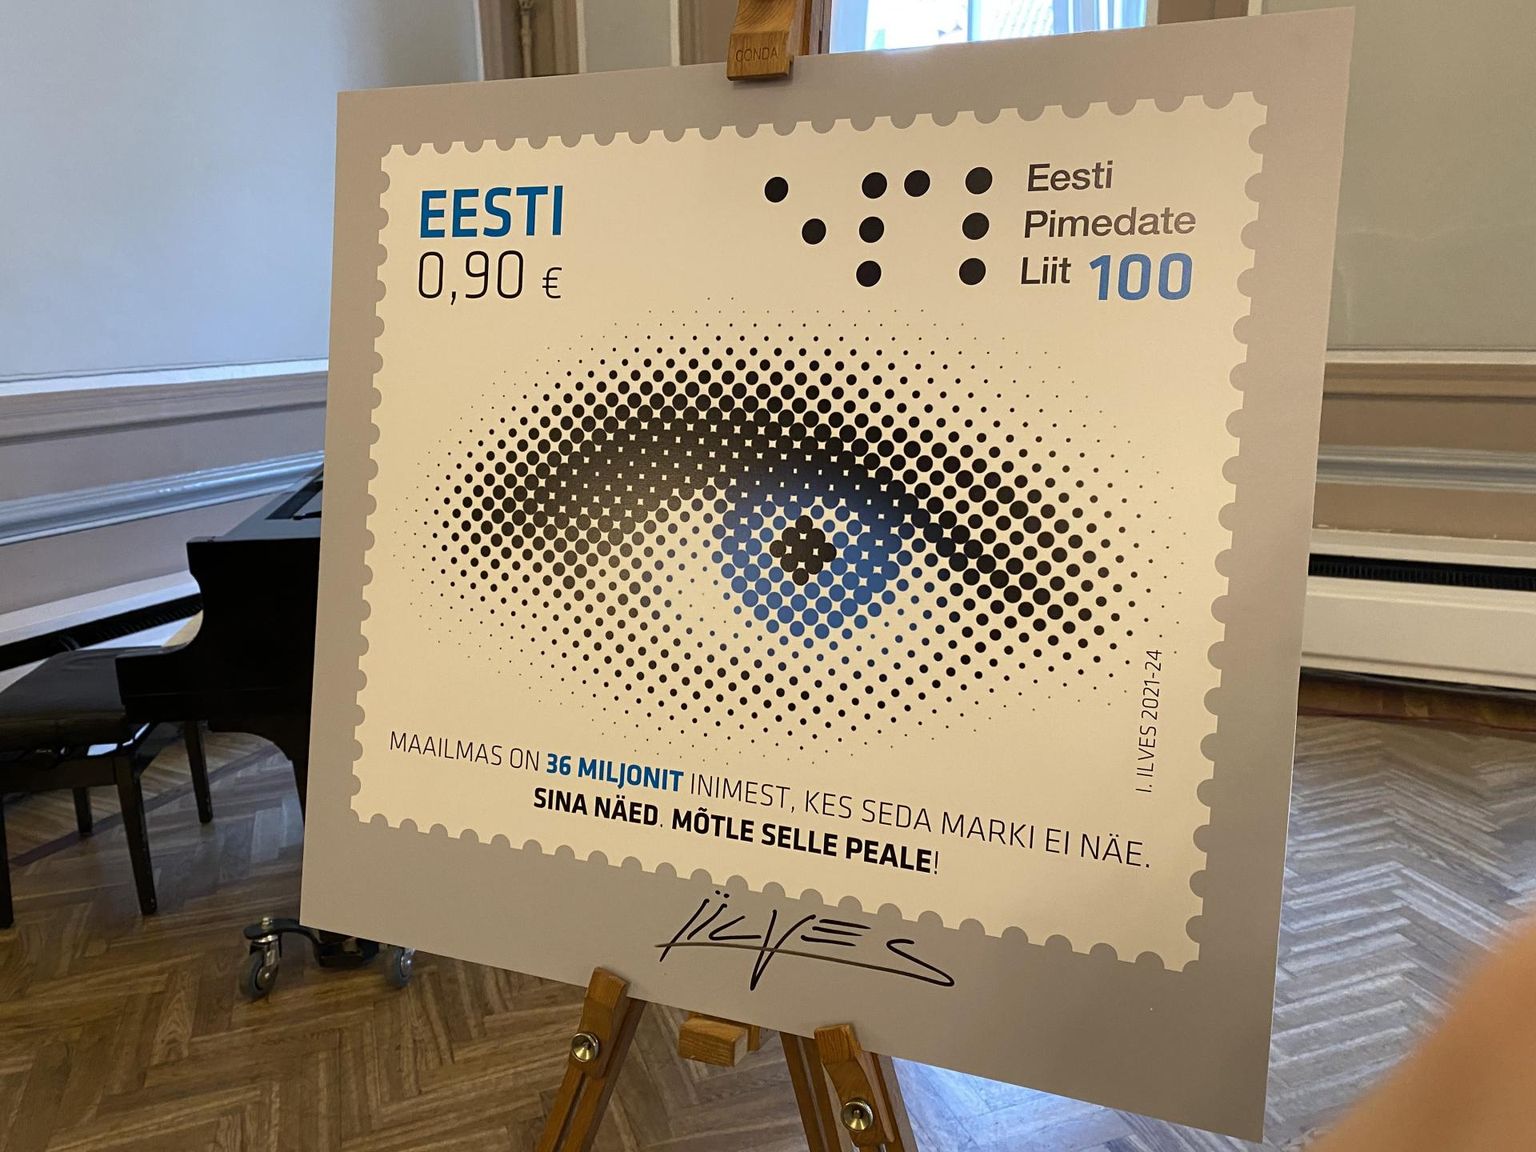 Eesti Pimedate Liit ja Omniva andsid välja punktkirjaga postmargi. Varem pole Eestis punktkirjaga postmarki olnud.